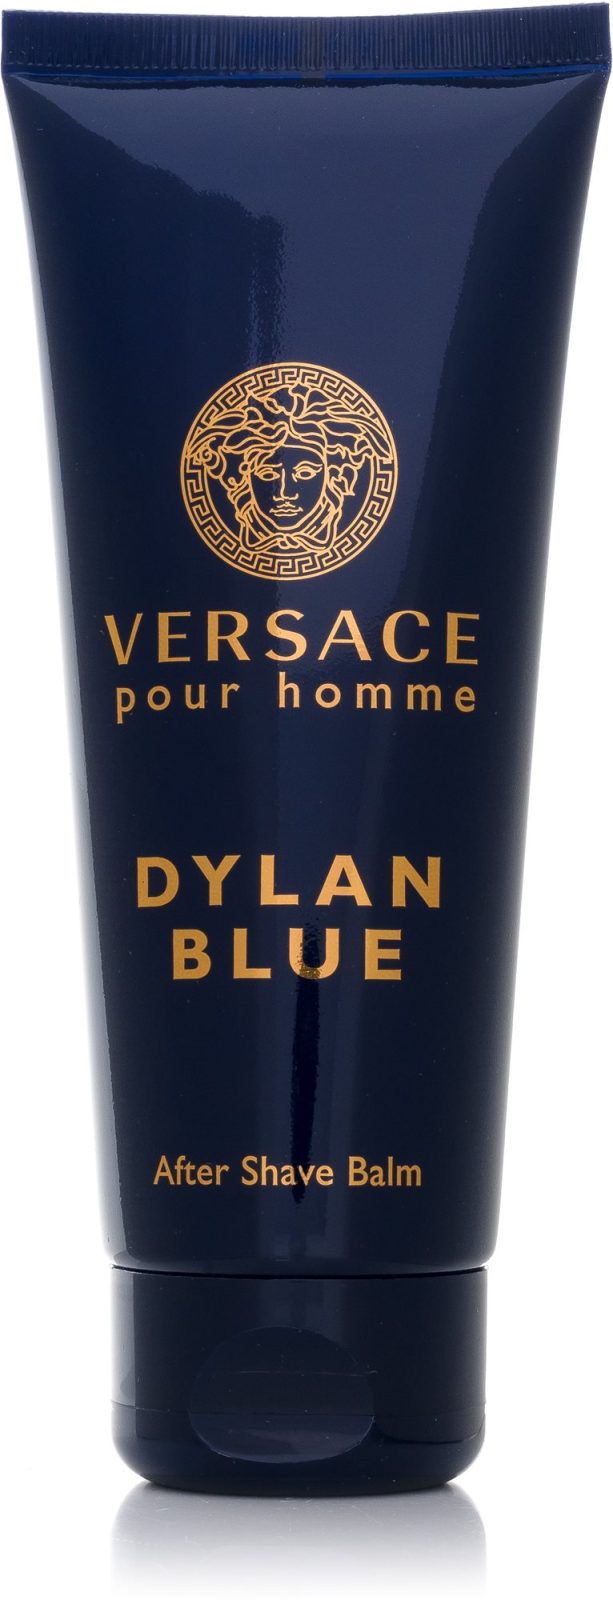 Borotválkozás utáni balzsam VERSACE Dylan Blue After Shave Balm 100 ml